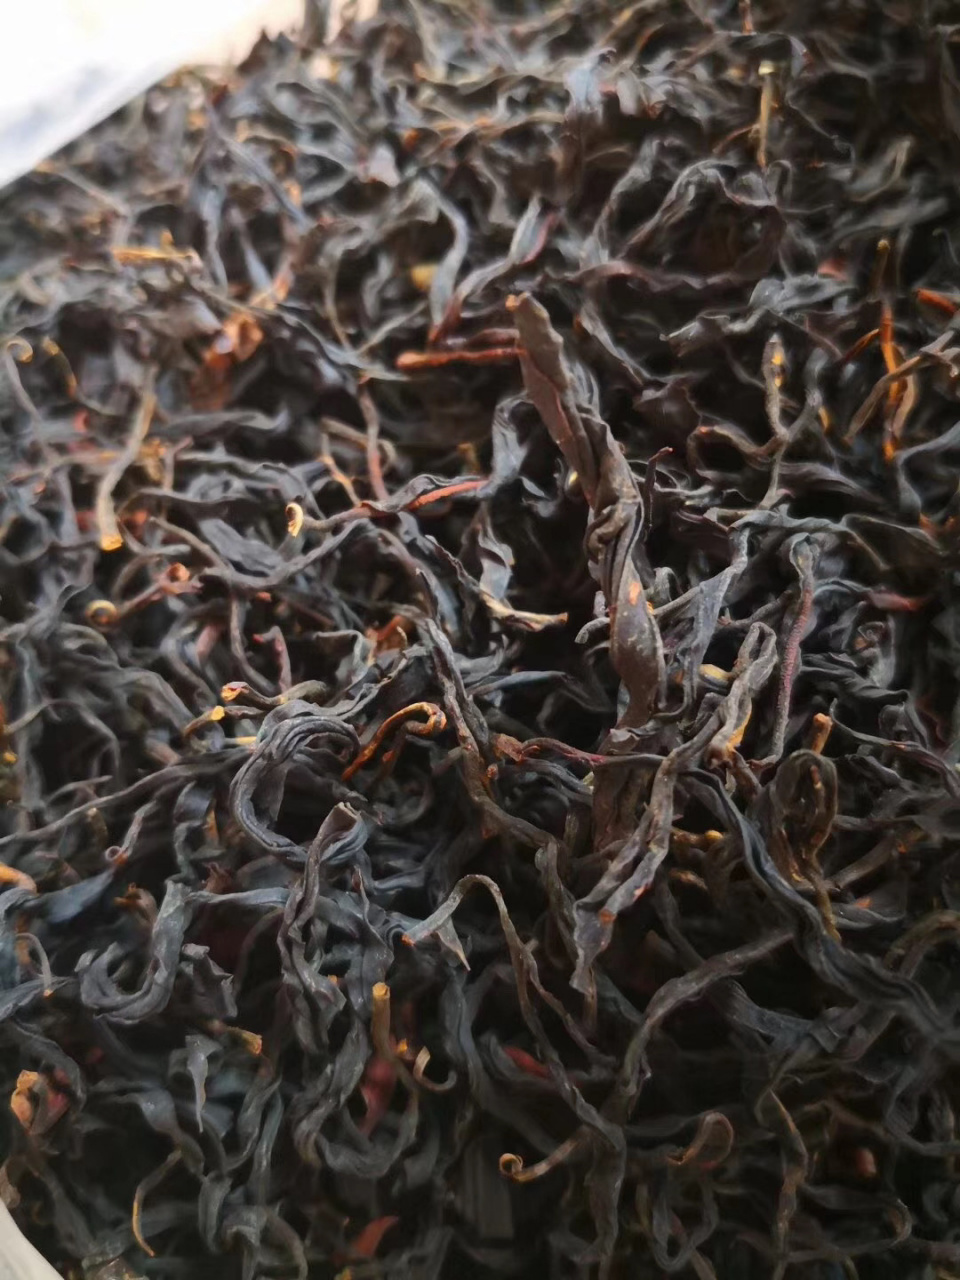 野生古树红茶价位图片